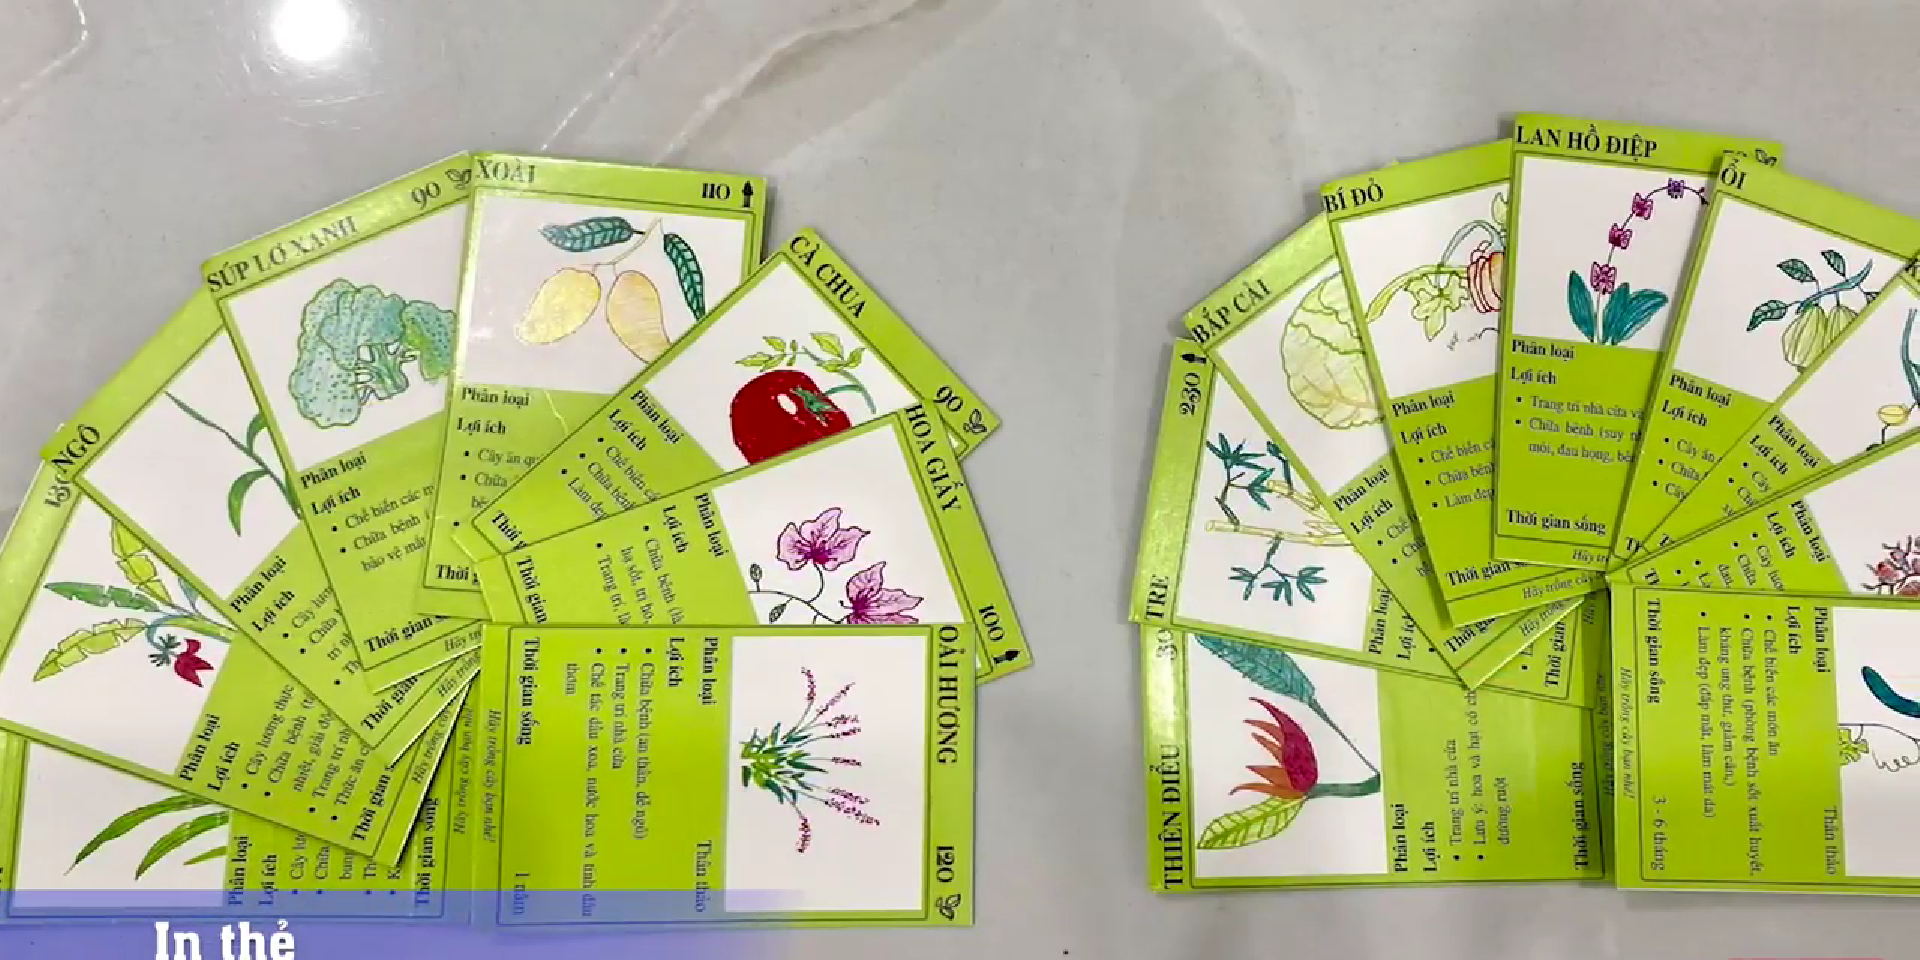 Thẻ bài - Cây xanh là sự kết hợp tuyệt vời giữa sự tự nhiên và trò chơi. Với những tấm thẻ bài được in hình các loại cây xanh đẹp mắt, bạn sẽ được khám phá thêm nhiều loài cây mới và học tập thêm kiến thức về chúng. Hãy xem hình ảnh về thẻ bài - cây xanh để tận hưởng sự kết hợp hoàn hảo này.